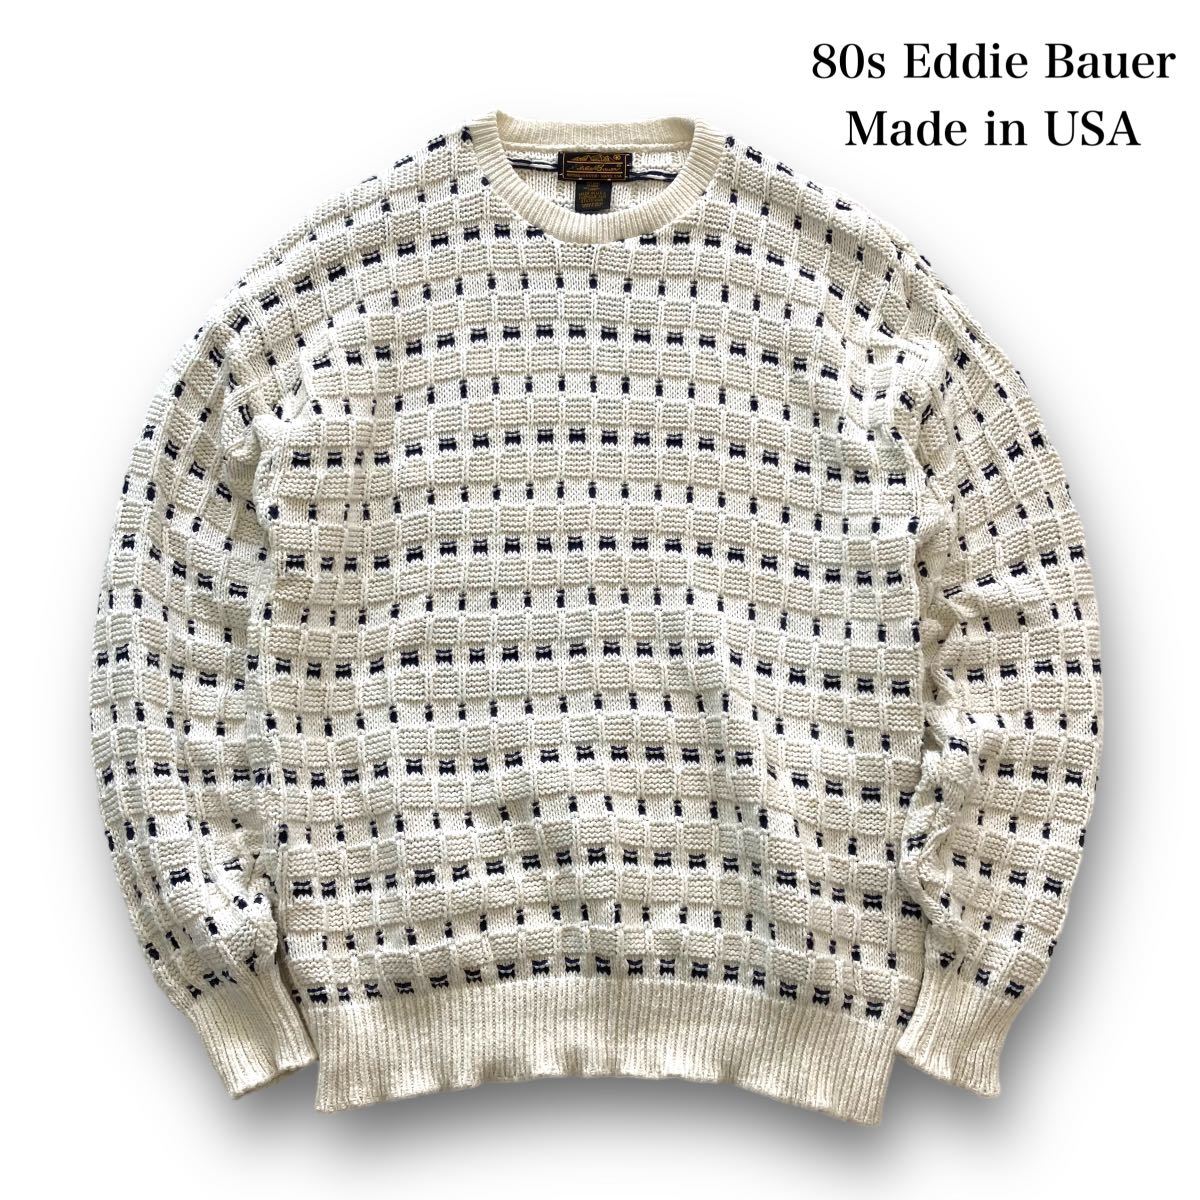 【Eddie Bauer】80s エディーバウワー USA製 ニット 立体編み 80年代 ヴィンテージ古着 アメリカ製 ニットセーター オーバーサイズ (XL)